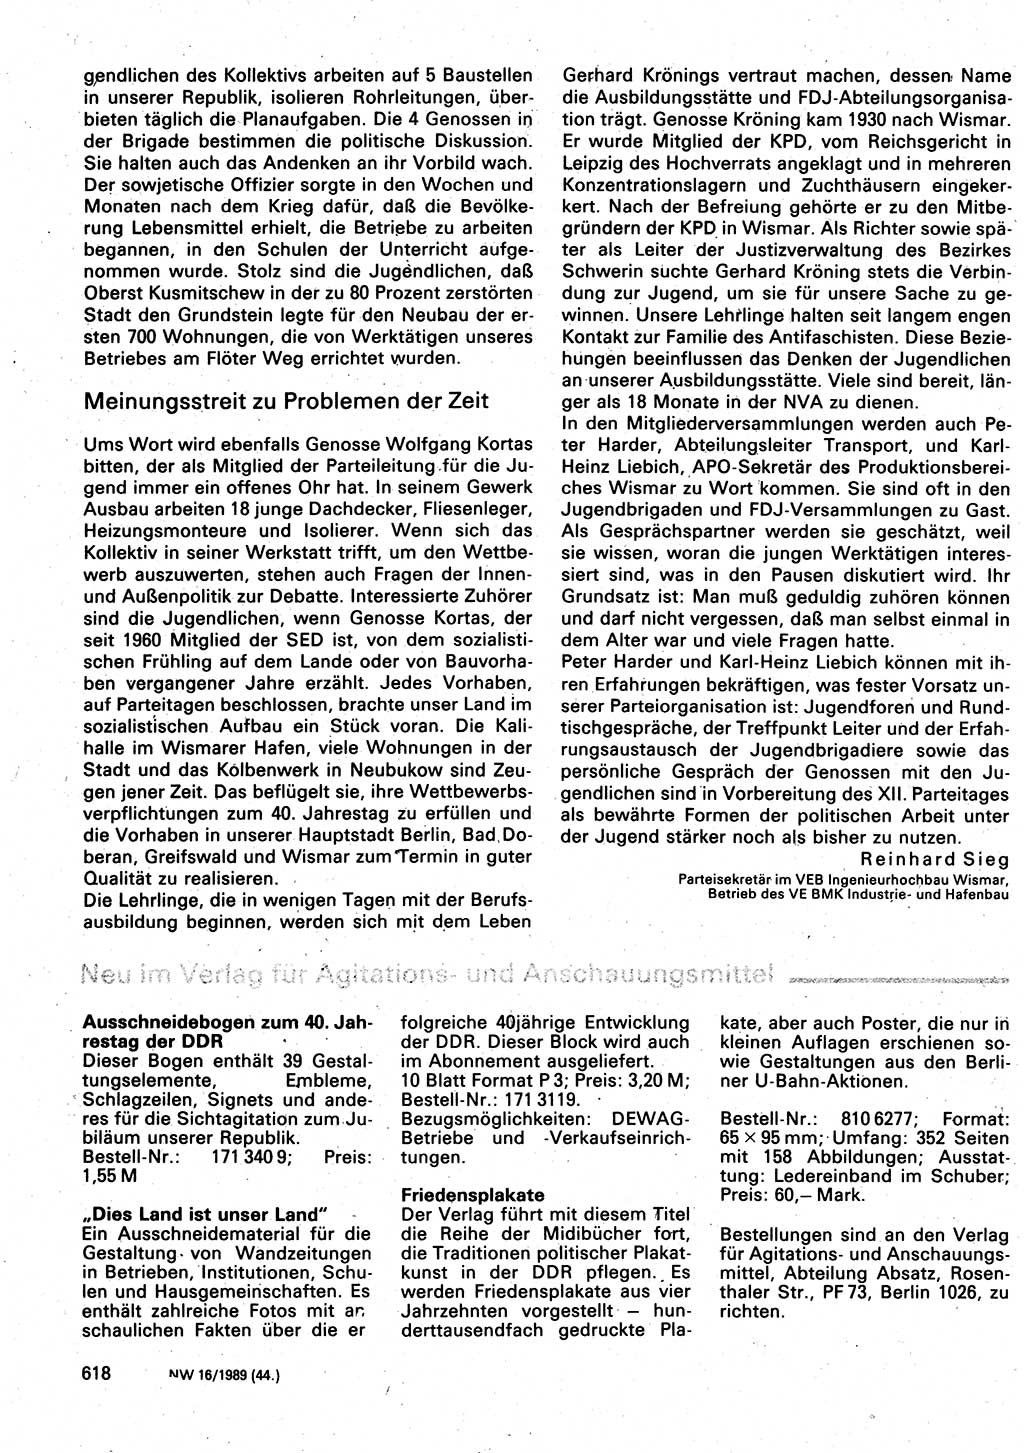 Neuer Weg (NW), Organ des Zentralkomitees (ZK) der SED (Sozialistische Einheitspartei Deutschlands) für Fragen des Parteilebens, 44. Jahrgang [Deutsche Demokratische Republik (DDR)] 1989, Seite 618 (NW ZK SED DDR 1989, S. 618)